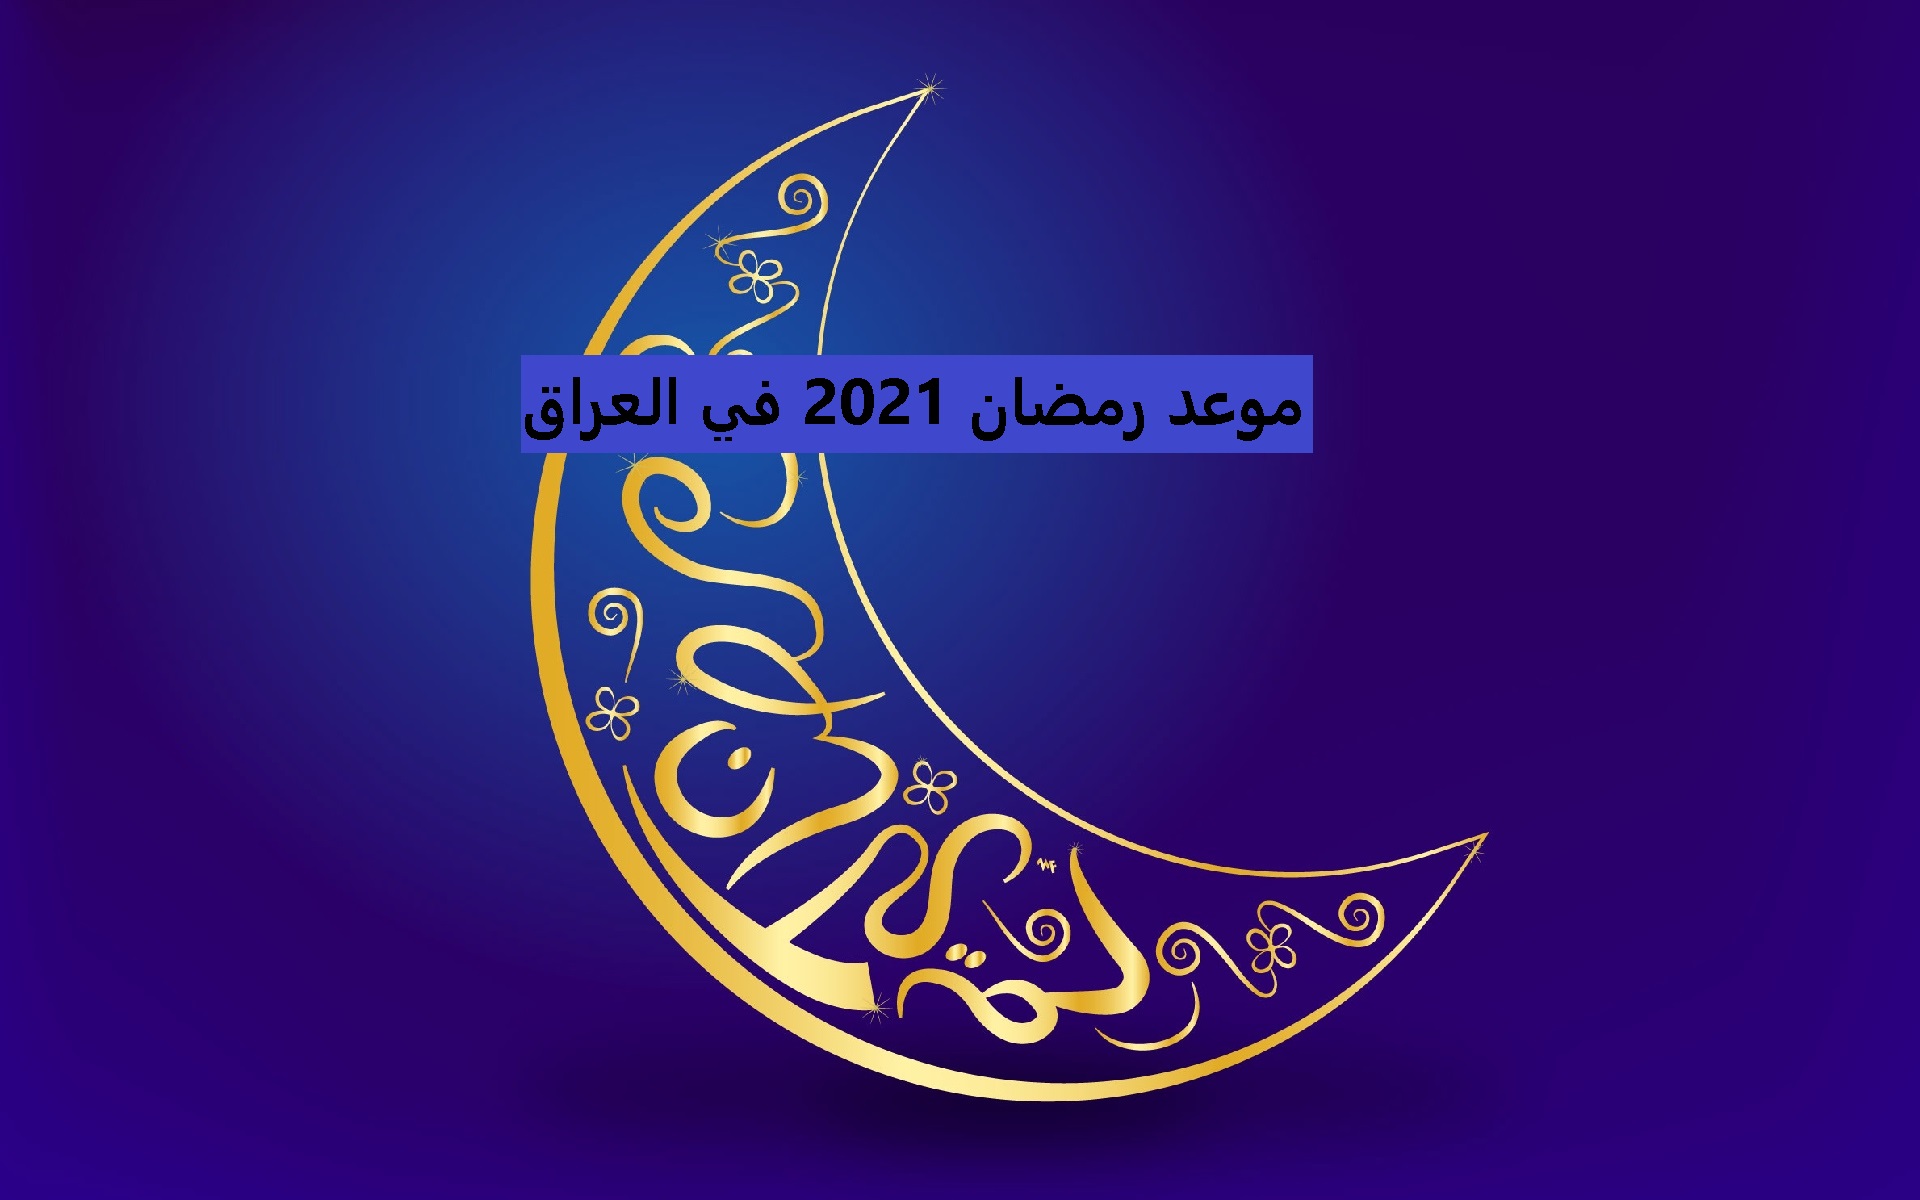 موعد رمضان 2021 في العراق حسب ما أعلنت دار الإفتاء العراقية والموعد المحدد لبداية الشهر المبارك